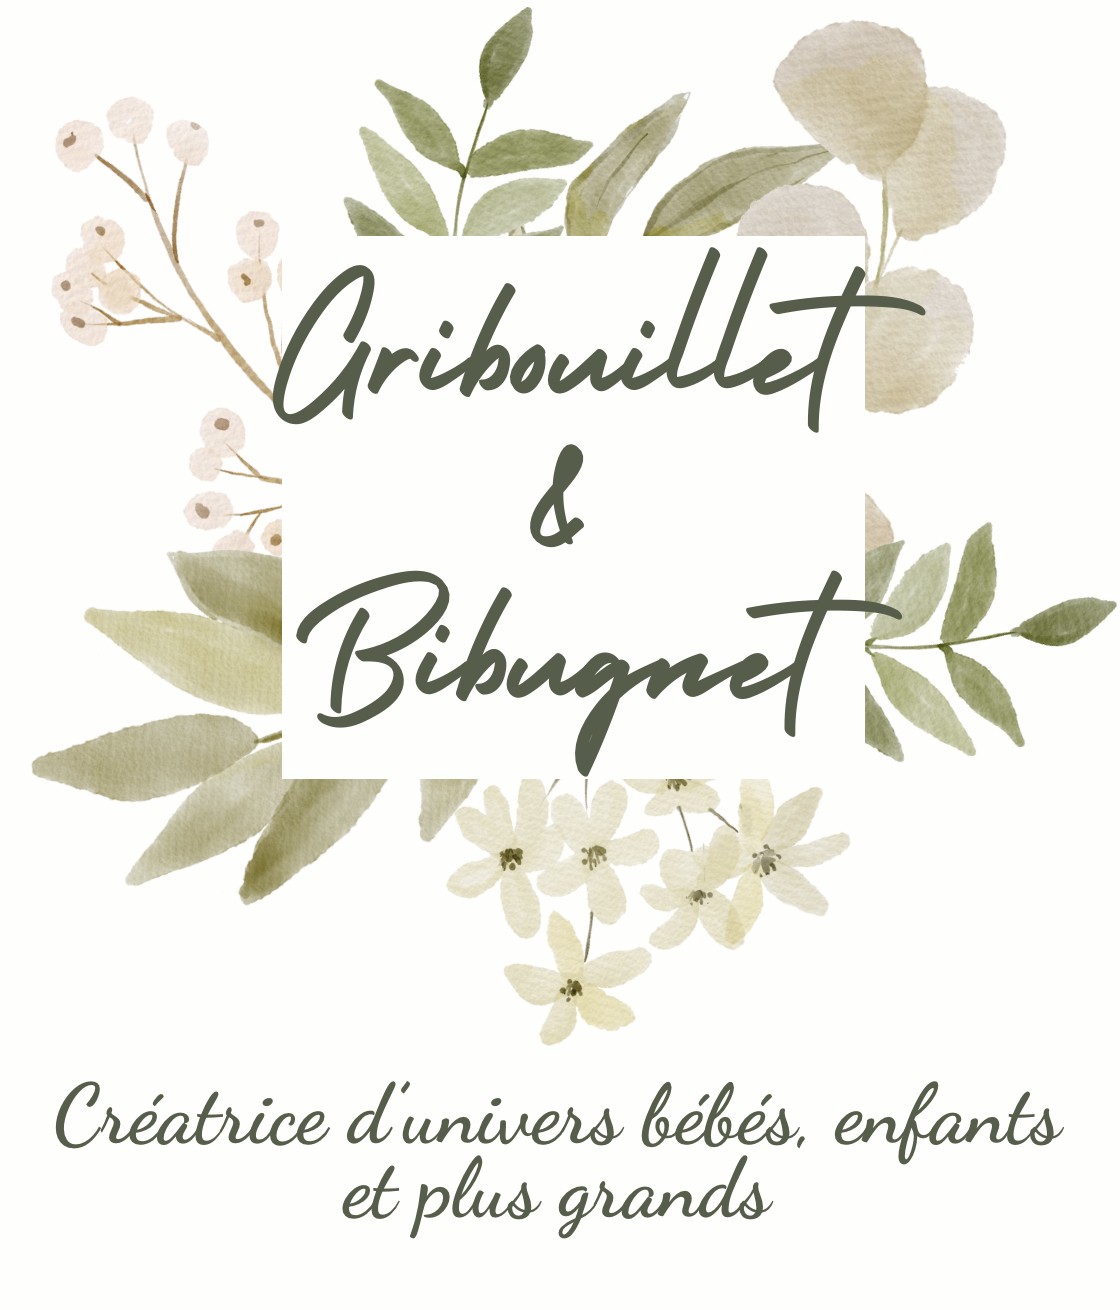 Gribouillet & Bibugnet